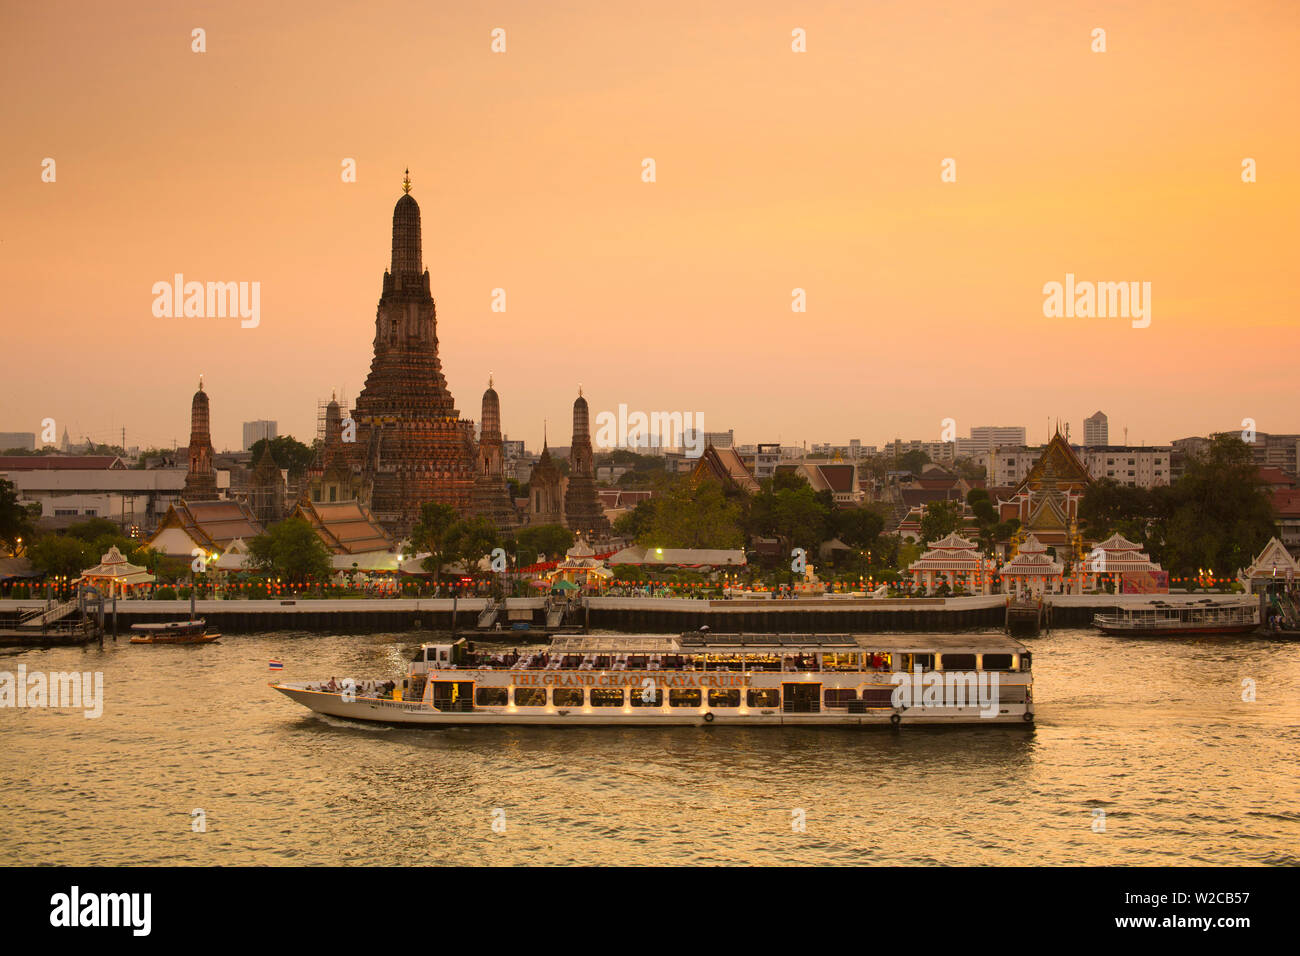 Temple of Dawn (Wat Arun) and Bangkok, Thailand Stock Photo